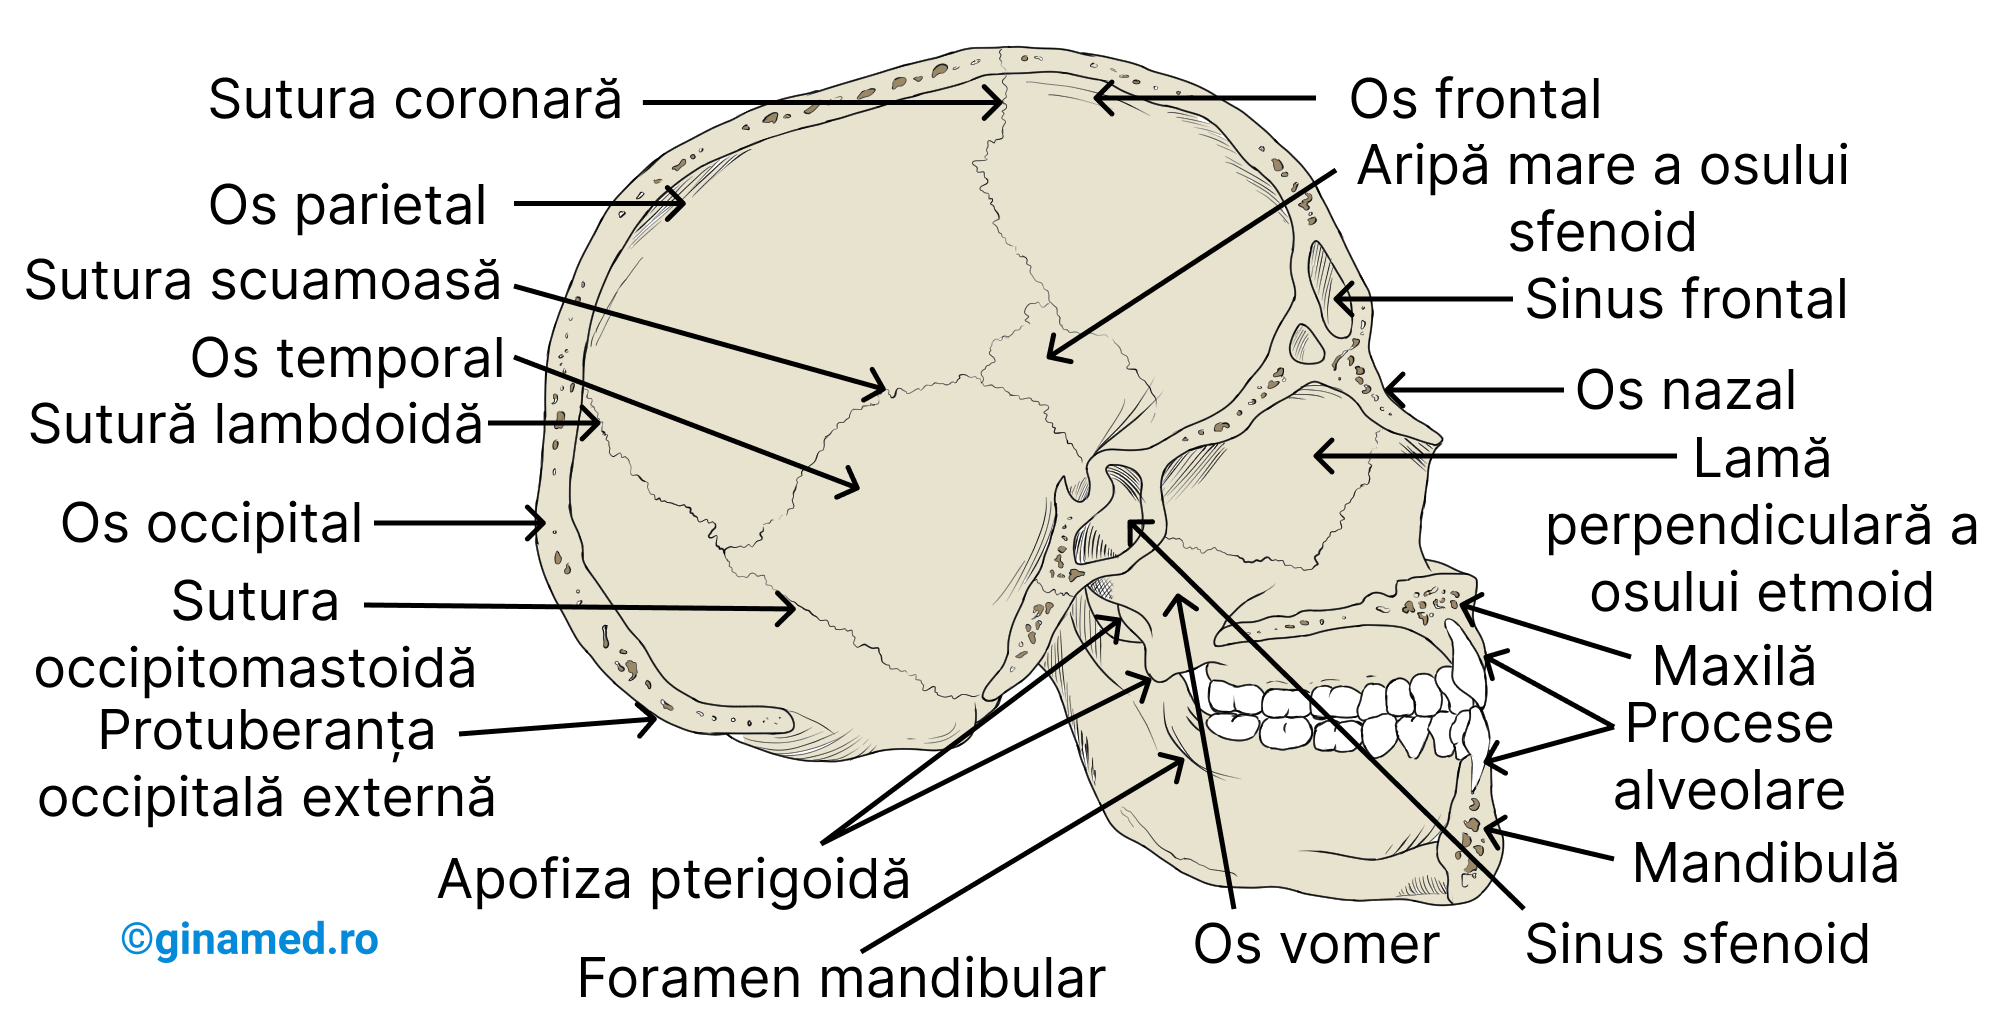 Anatomia internă a cutiei craniene în secțiune sagitală, privind partea stângă a craniului.